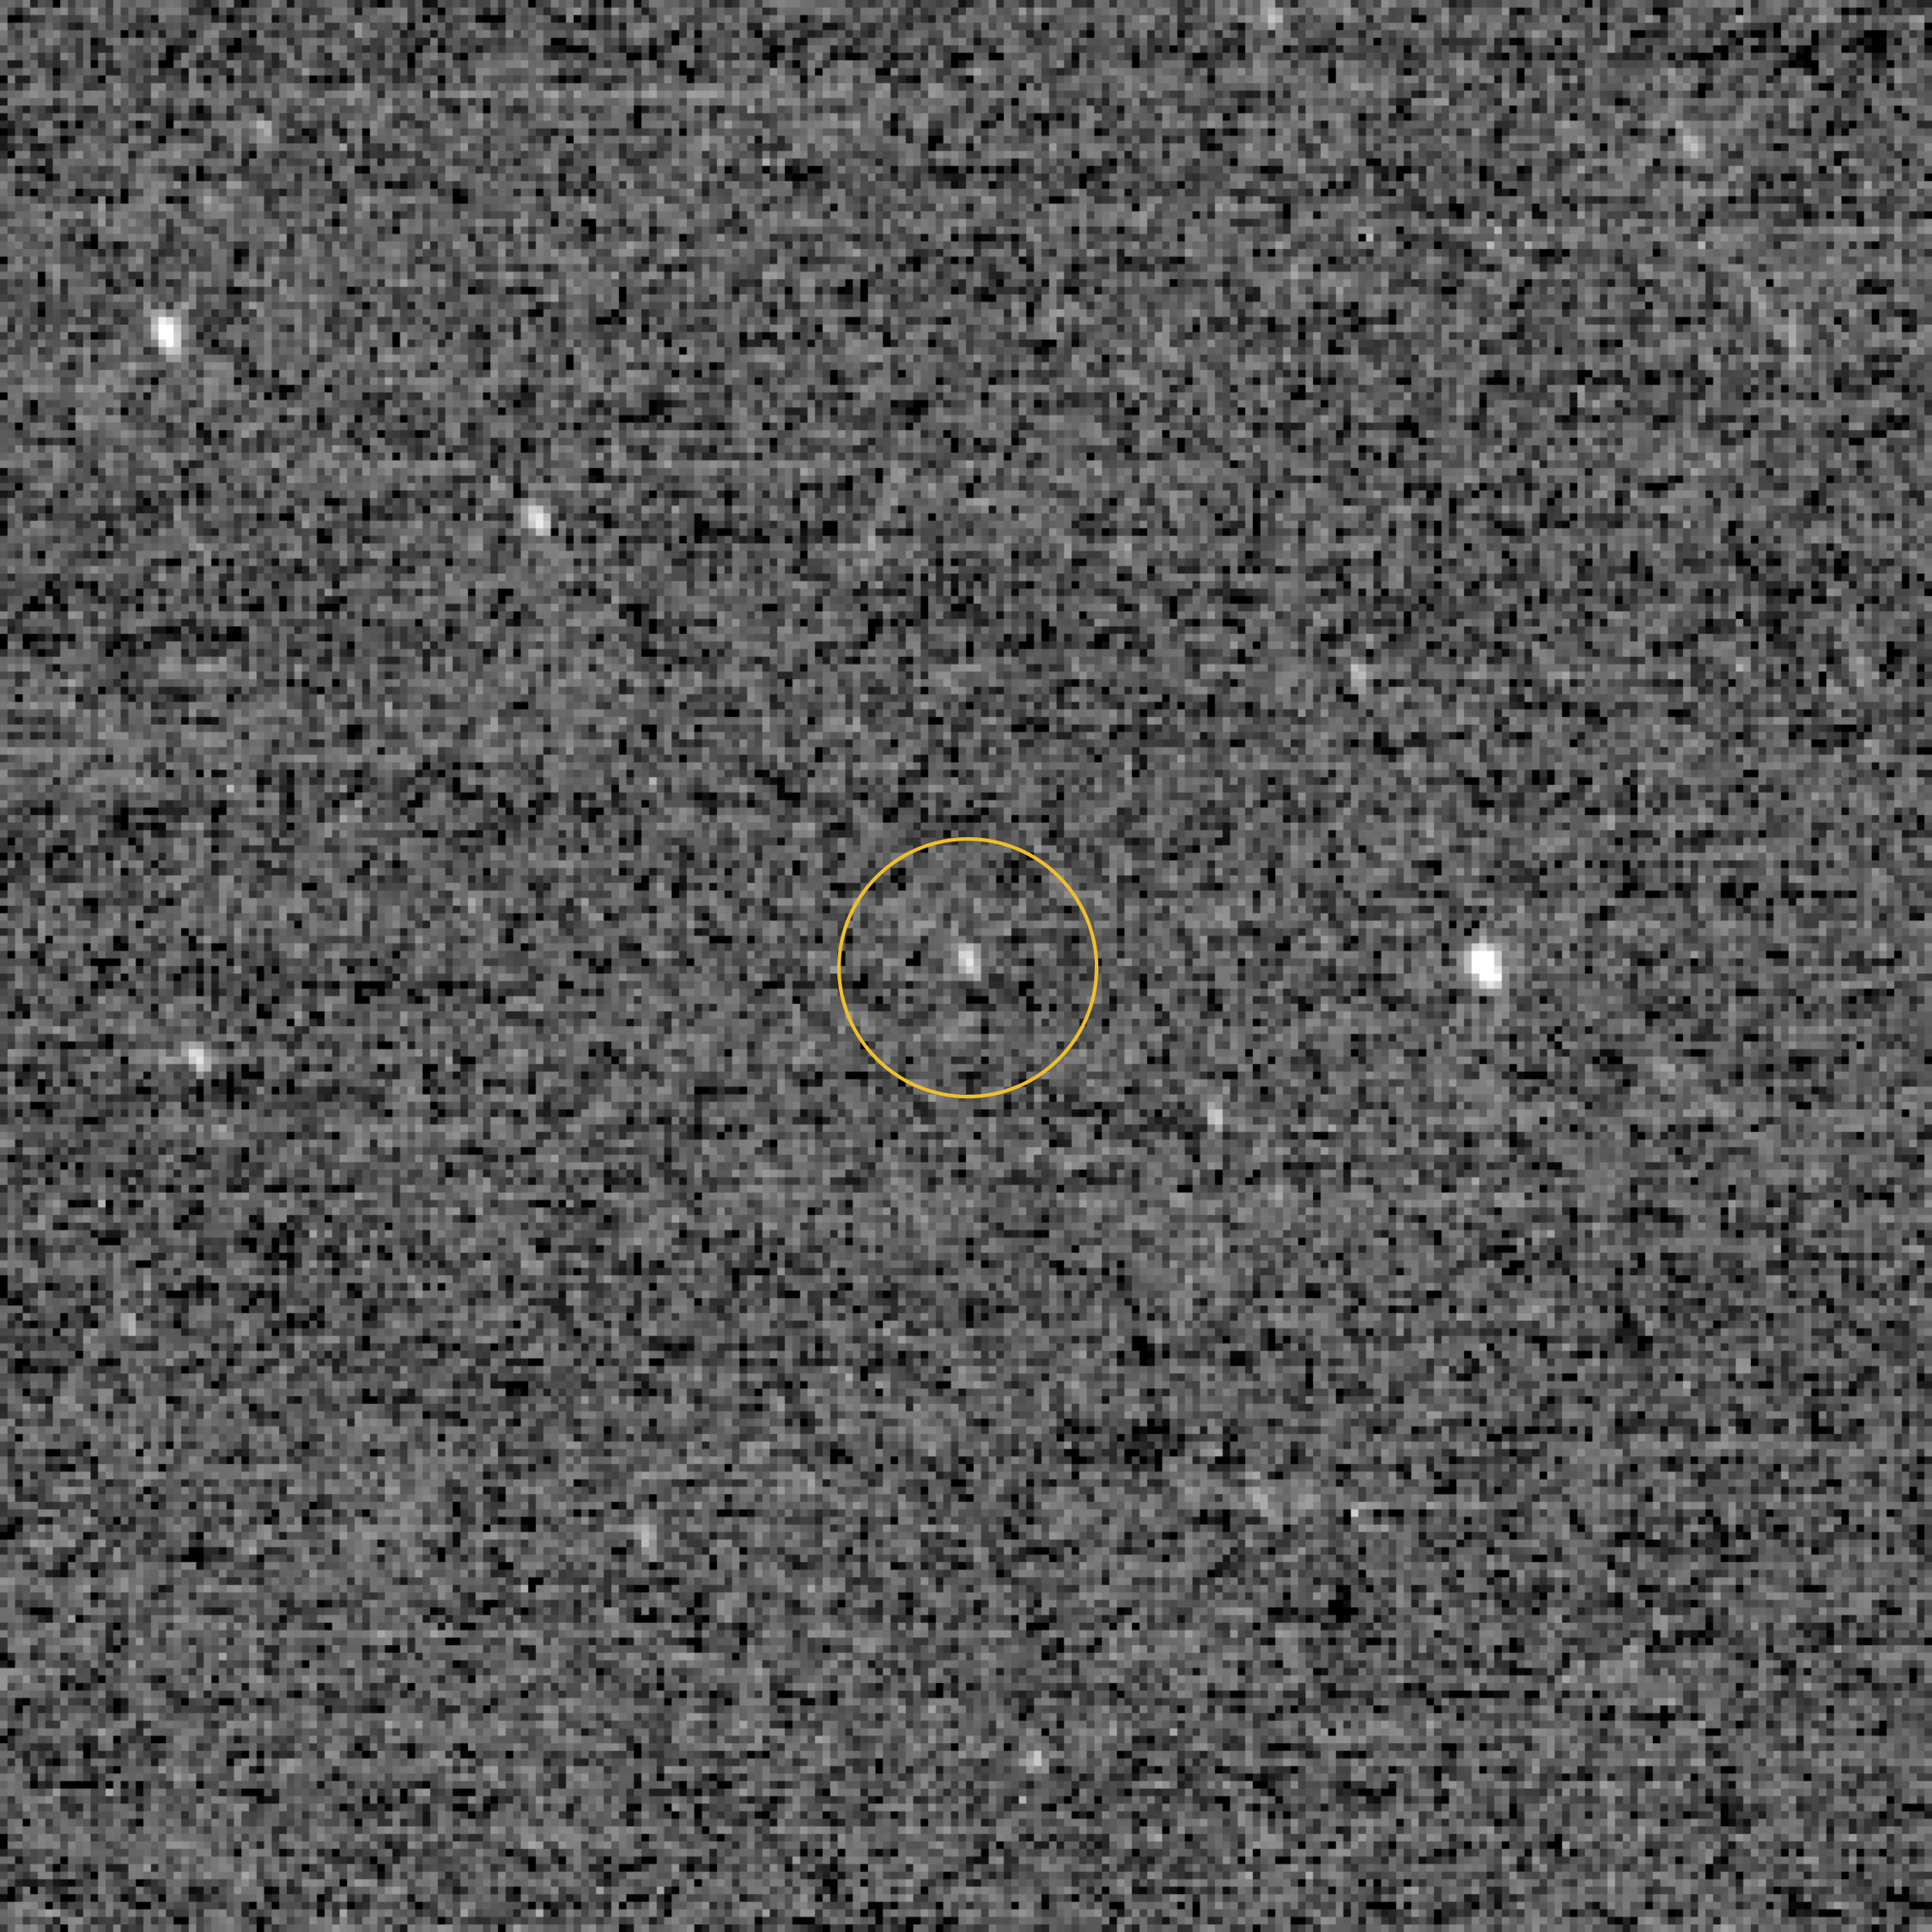 December 24-én még csak egy halvány pontnak látszott az Ultima Thule a New Horizons kamerája számára. Forrás: NASA/JHUAPL/SWRI